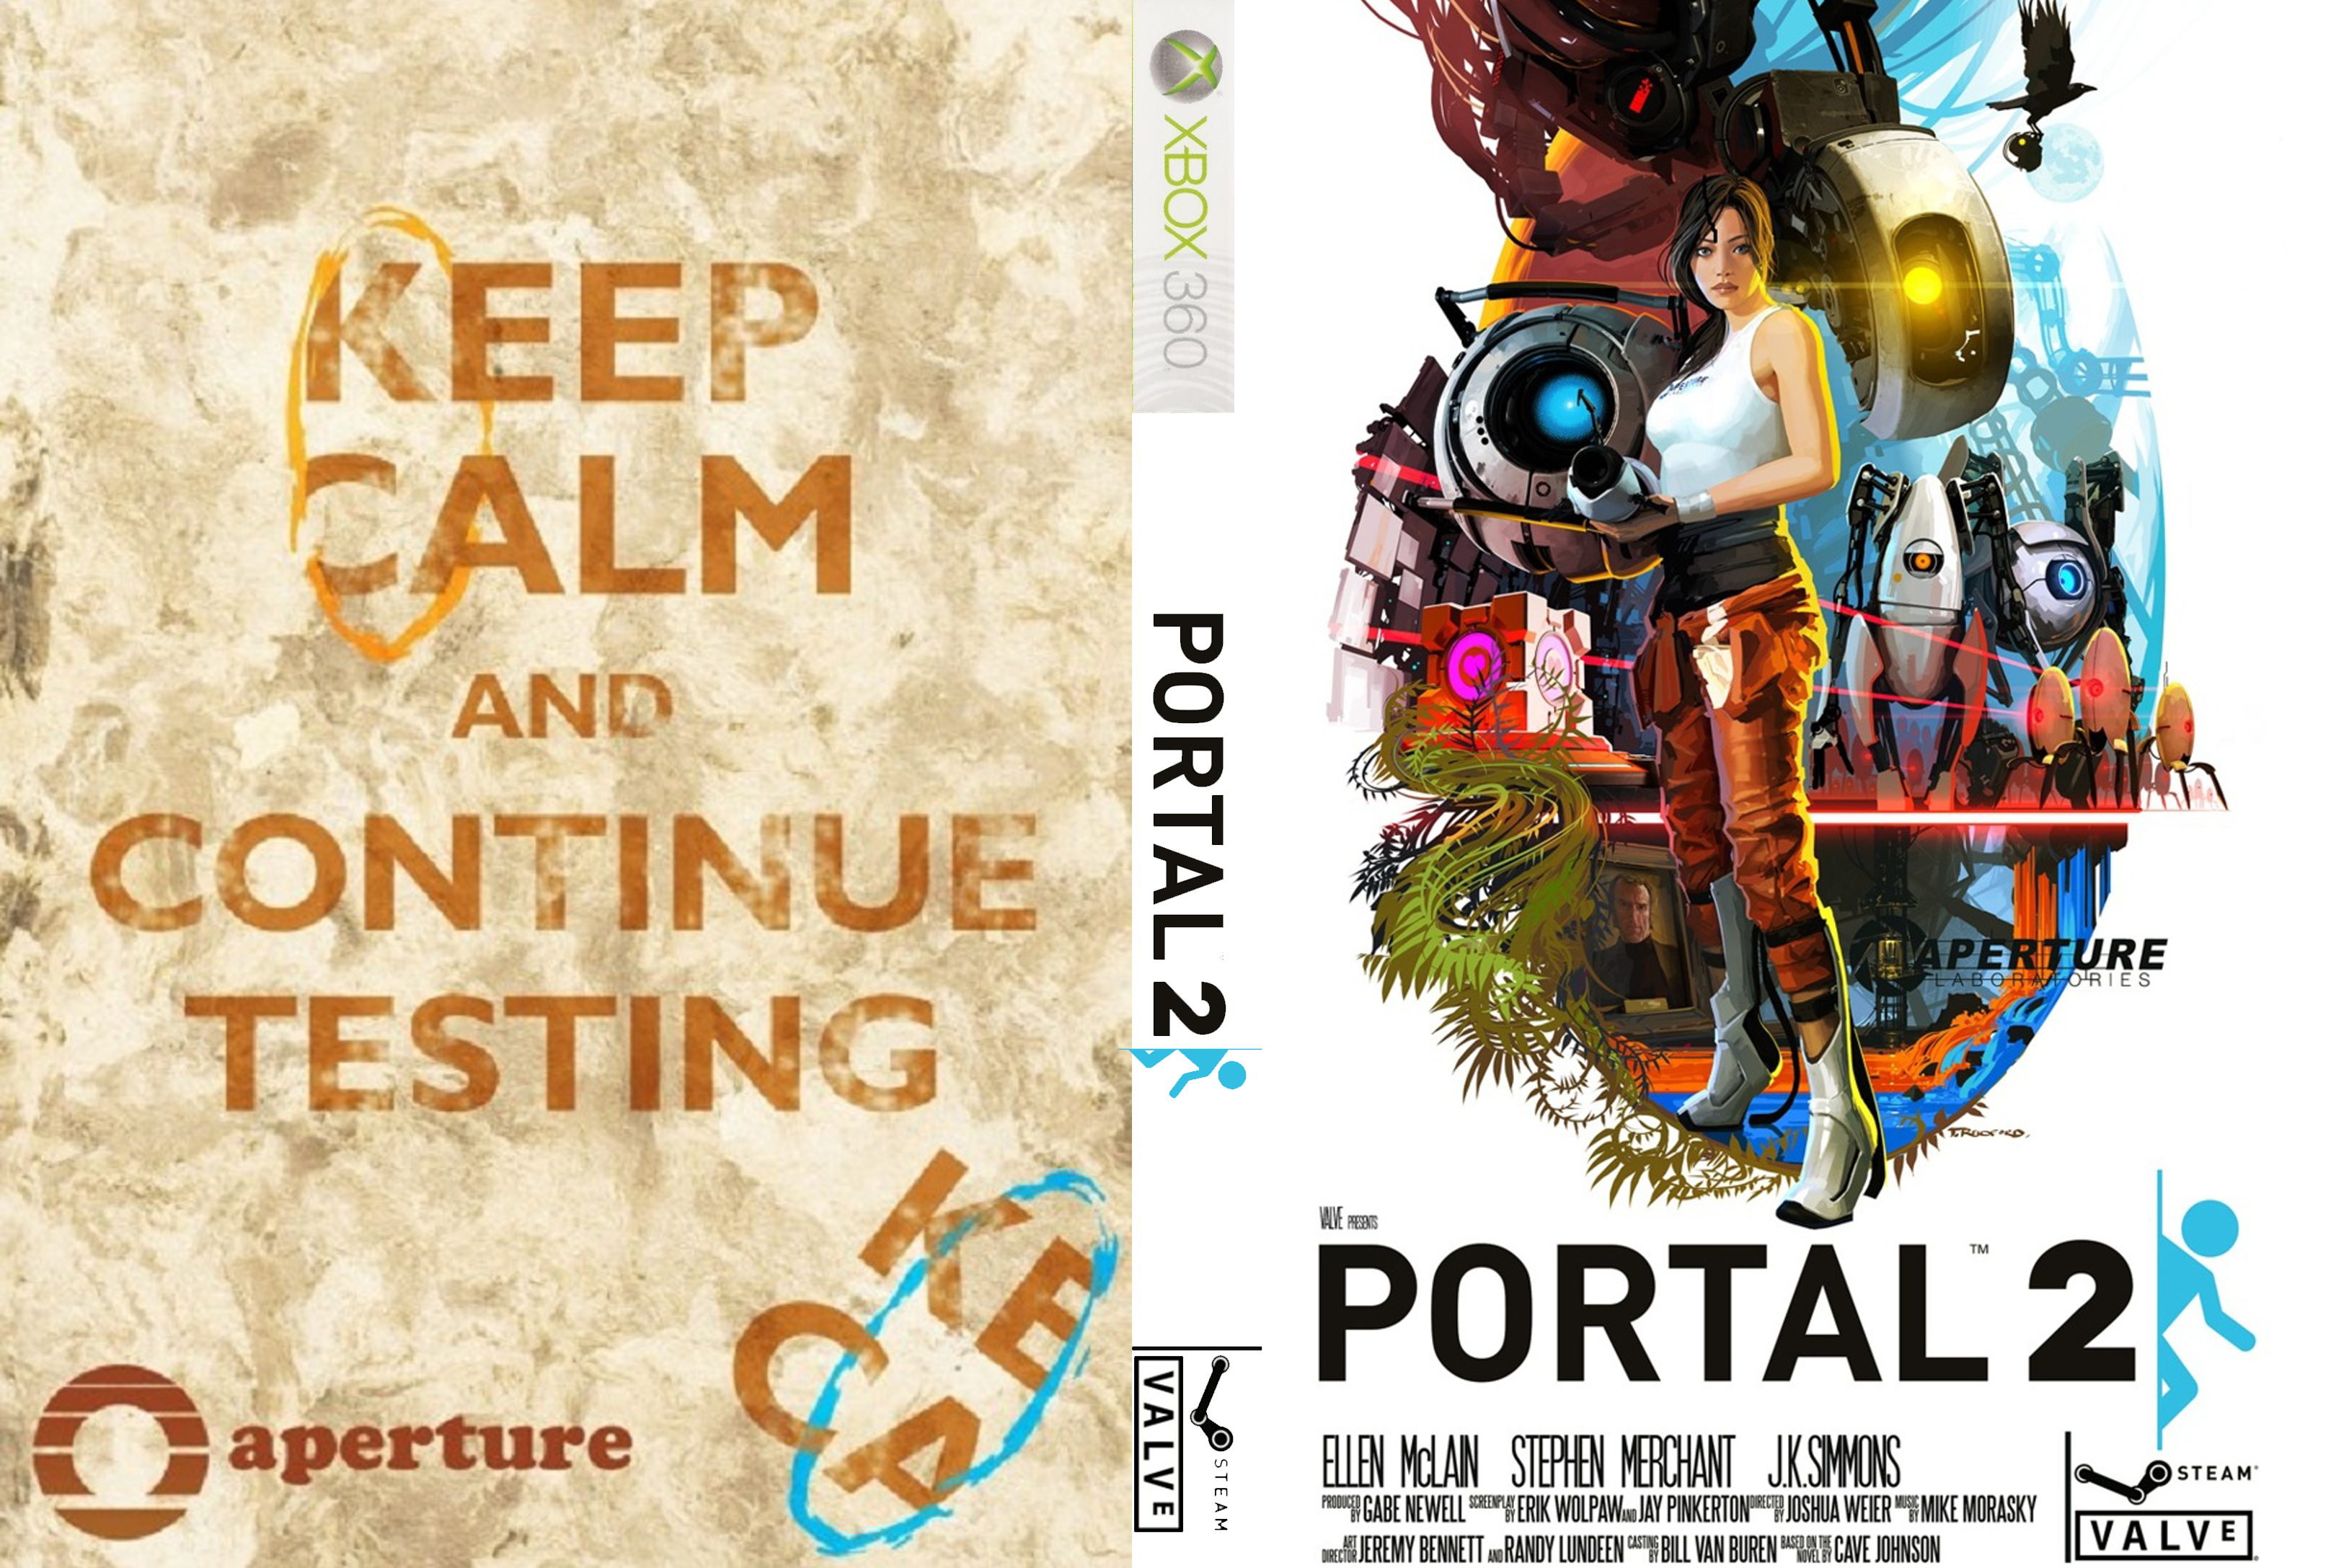 Portal 2 sixense perceptual pack что это такое фото 45